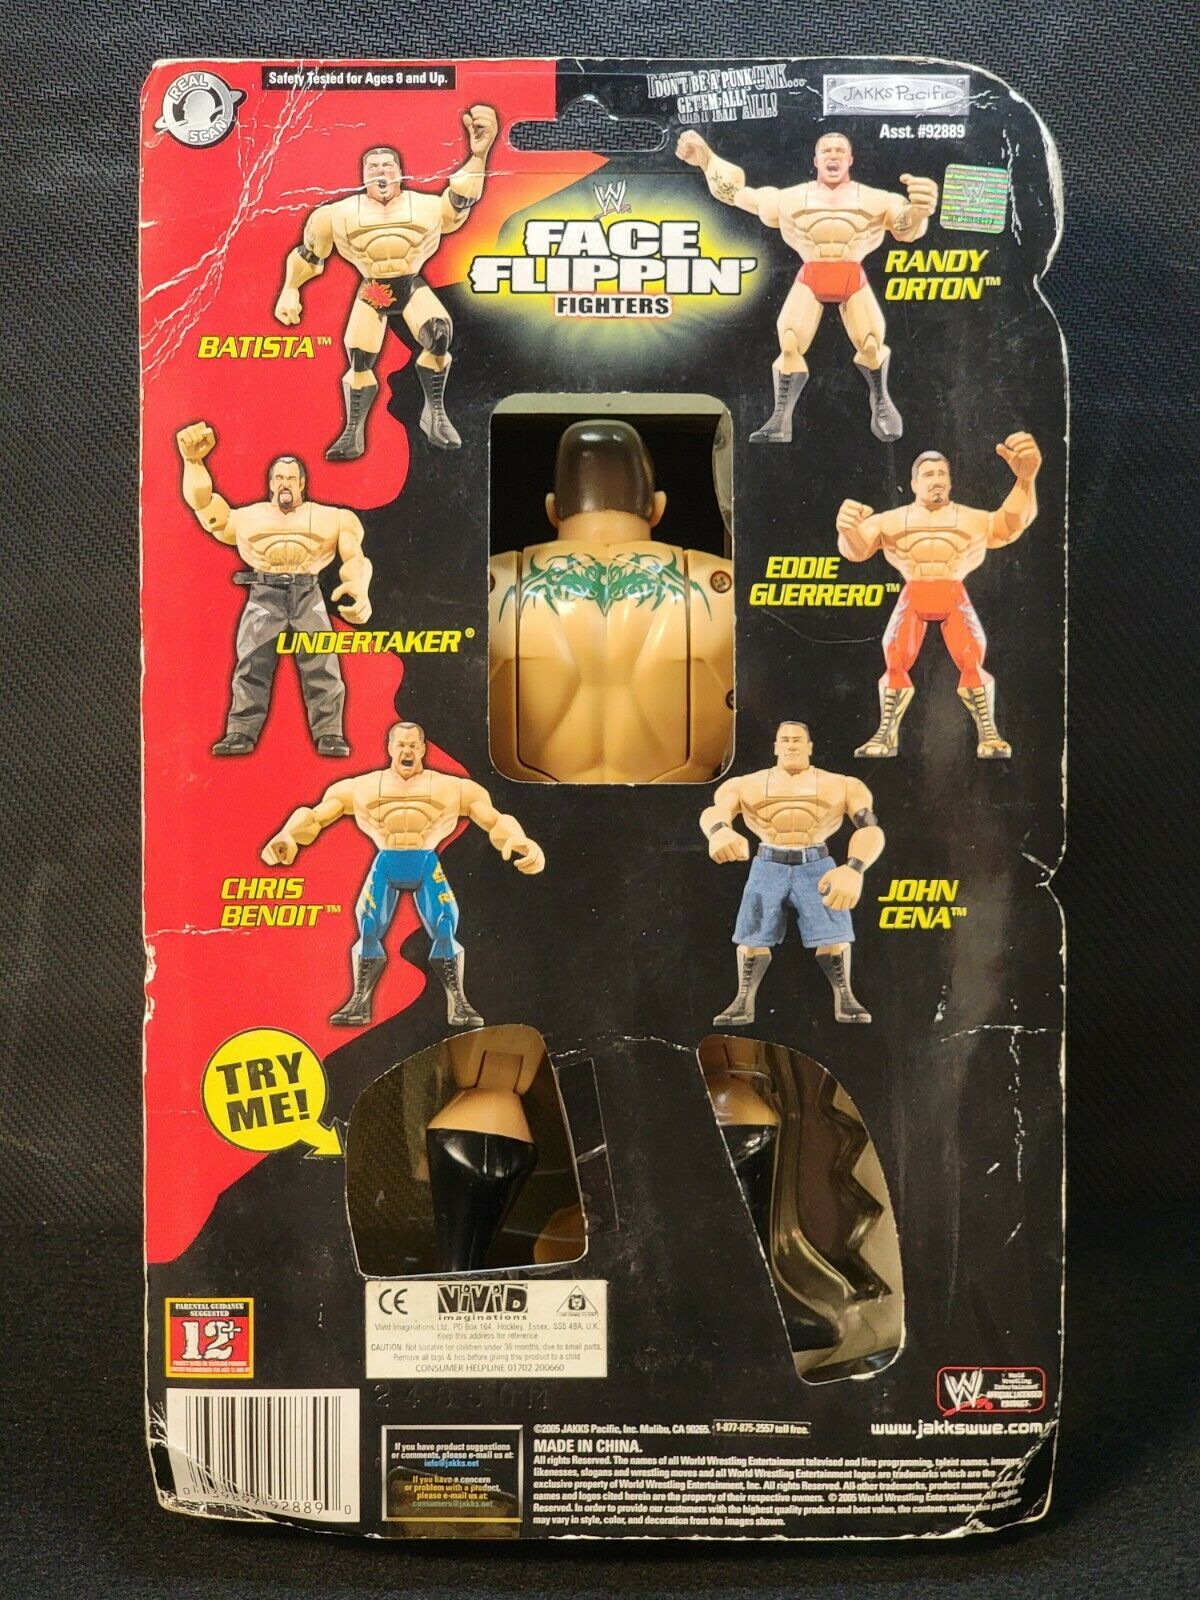 2005 WWE Jakks Pacific Face Flippin' Fighters Series 1 Randy Orton